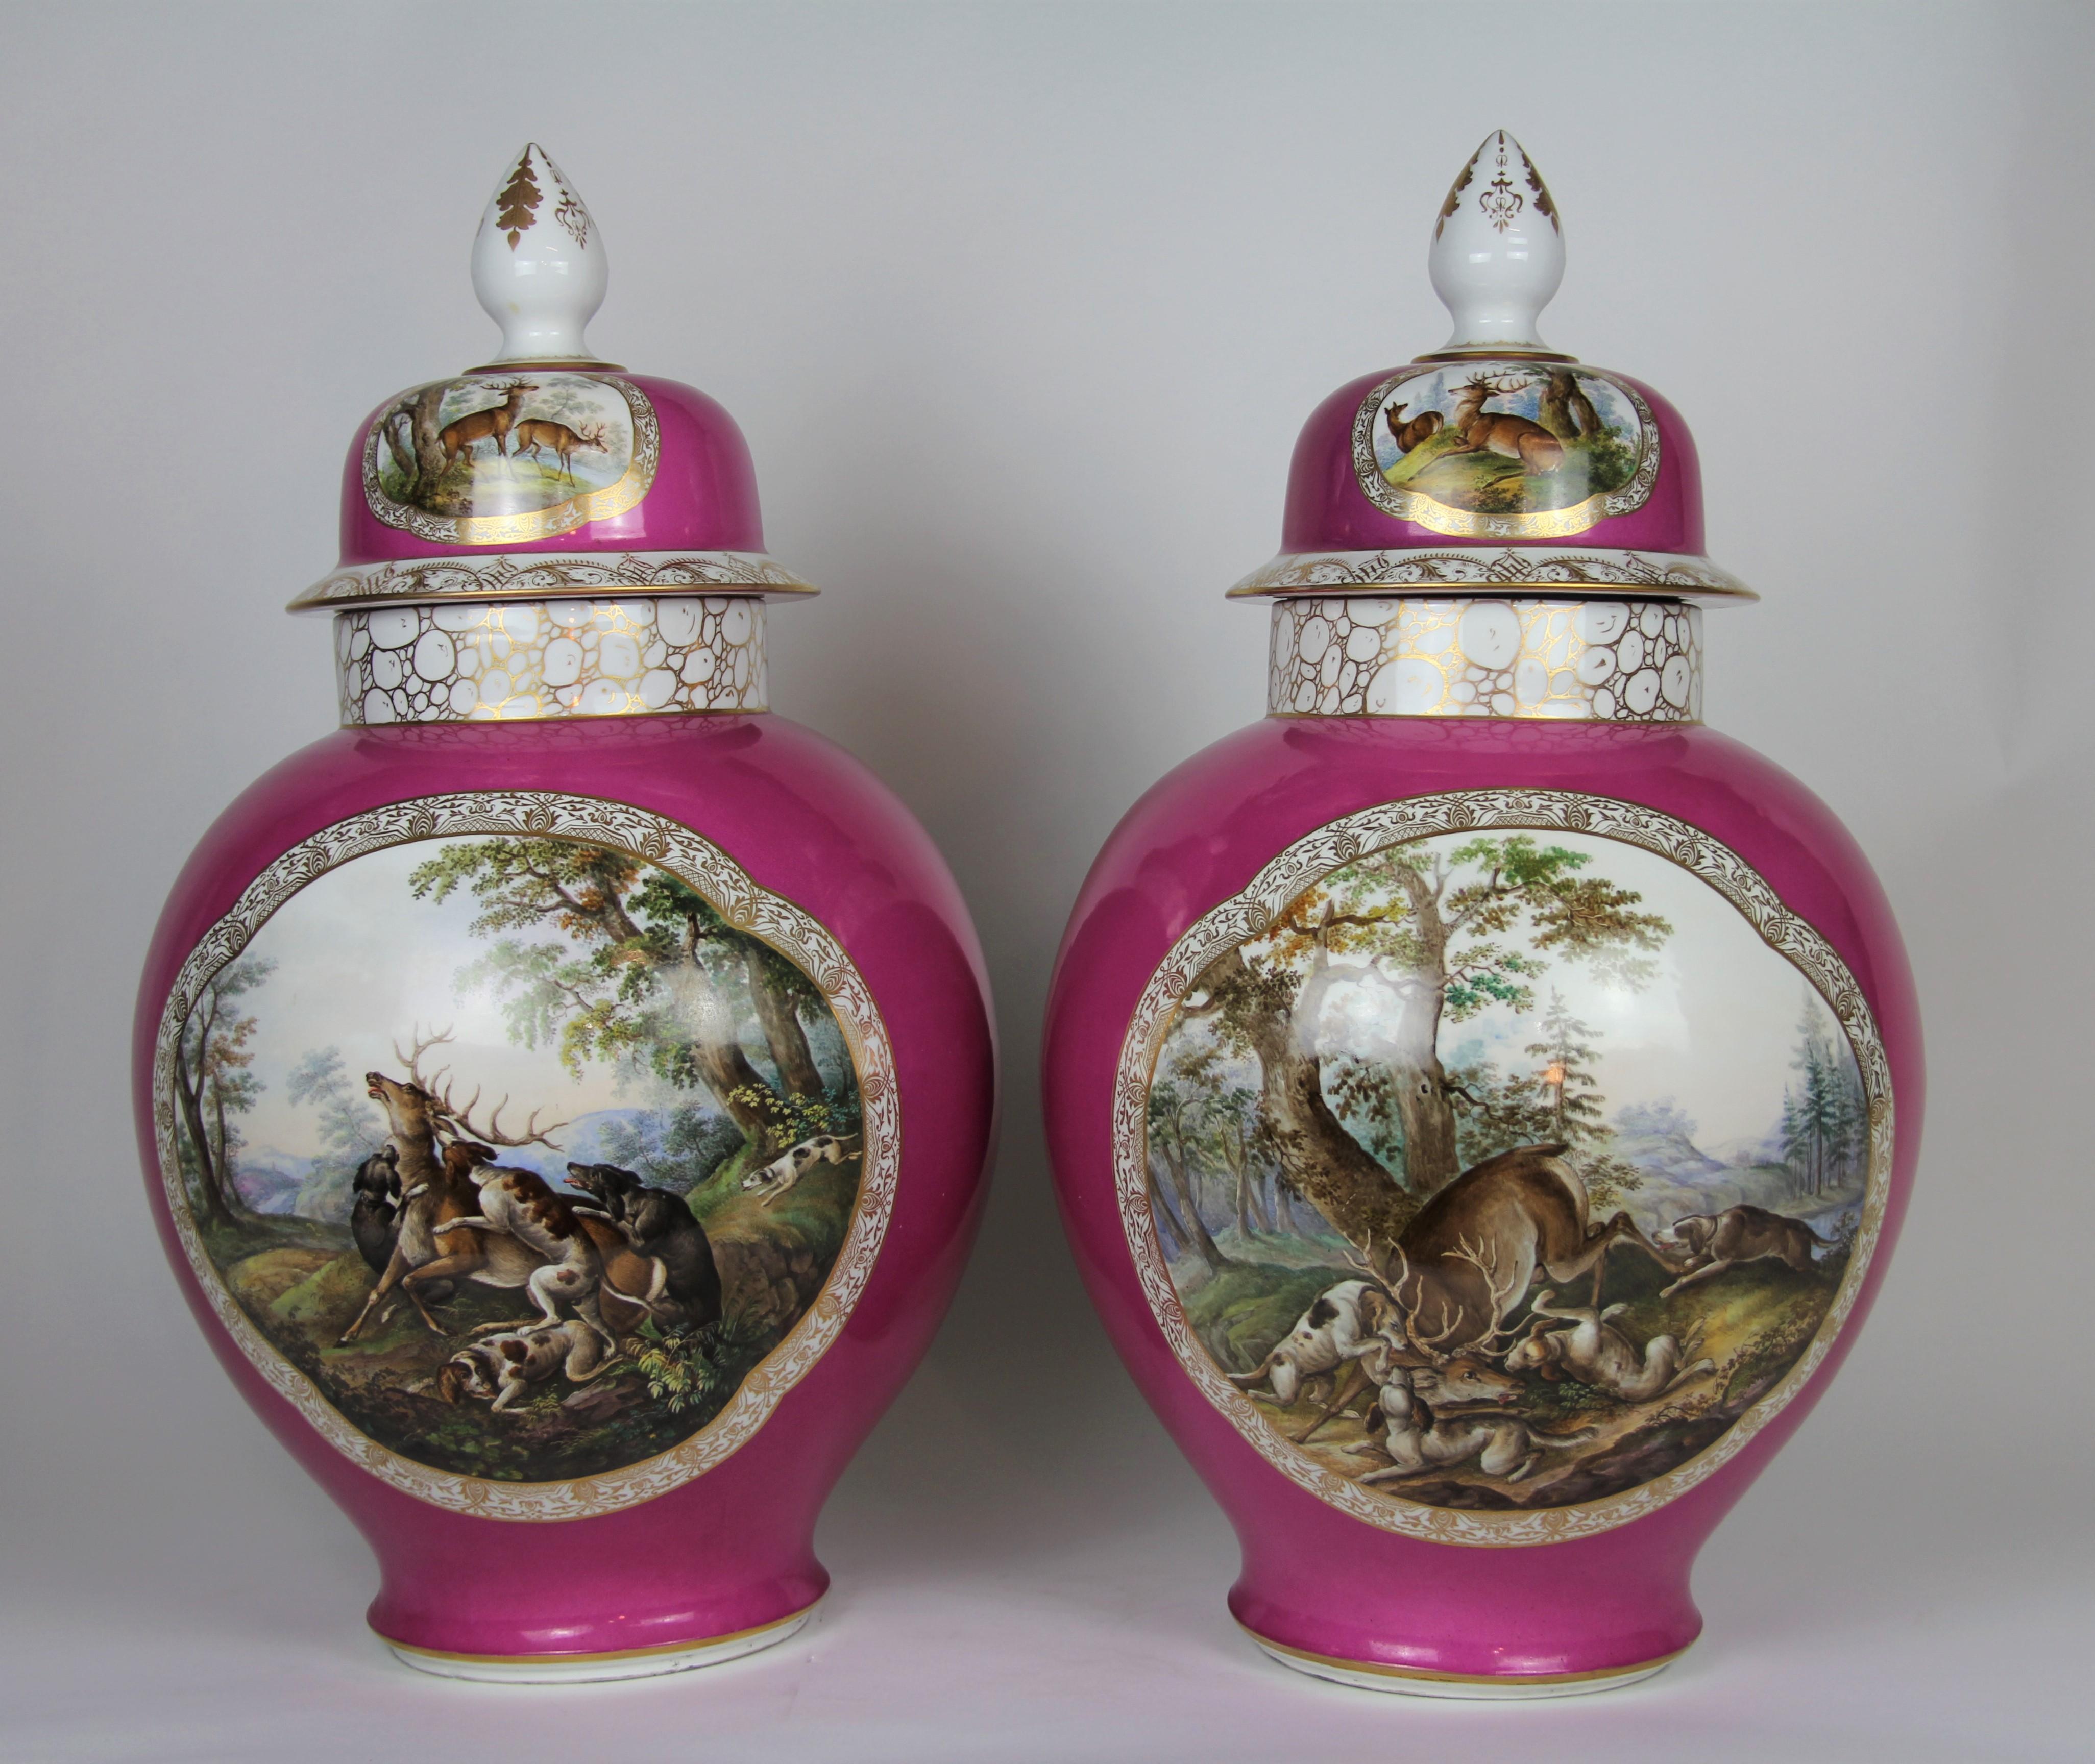 Paire monumentale de vases couverts d'une scène de chasse en porcelaine Augustus Rex Meissen de style Louis XVI du 19e siècle. Chacun d'eux est magnifiquement peint à la main avec des scènes de chasseurs, de chiens de chasse, de cerfs et d'arbres.